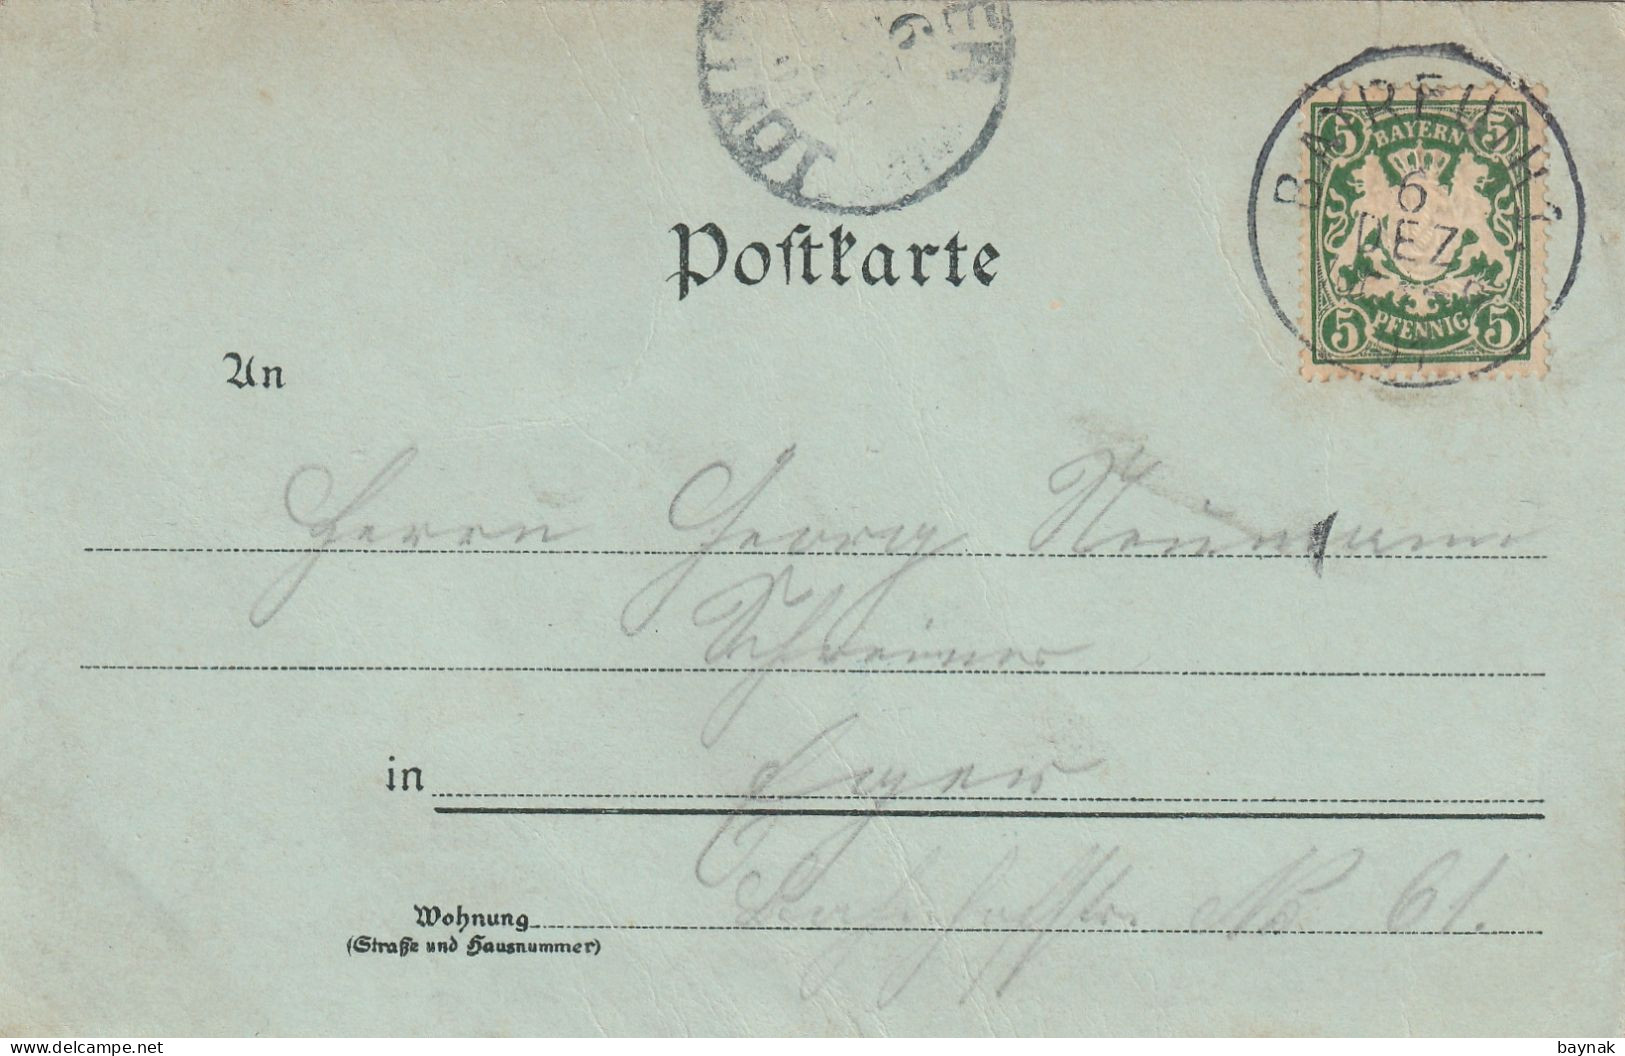 DE477  --  GRUSS AUS BAYREUTH --  WAGNER THEATER  --   MONDSCHEIN LITHO  --  OTTMAR ZIEHER  --  1900 - Bayreuth